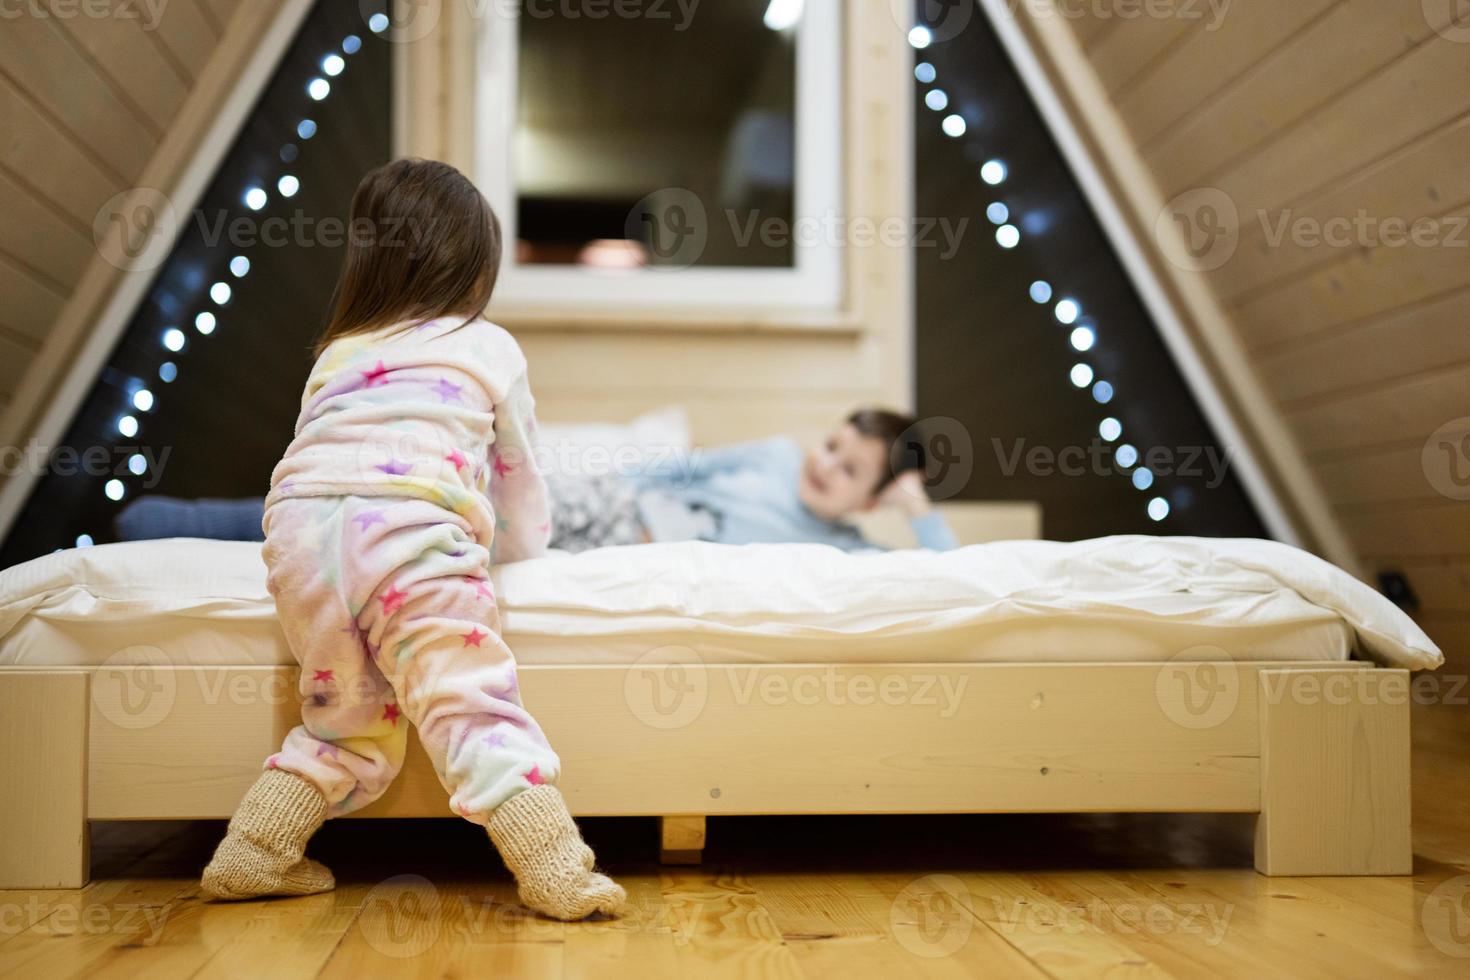 bambini nel morbido caldo pigiama giocando a di legno cabina casa. concetto di infanzia, tempo libero attività, felicità. fratello e sorella avendo divertimento e giocando insieme. foto